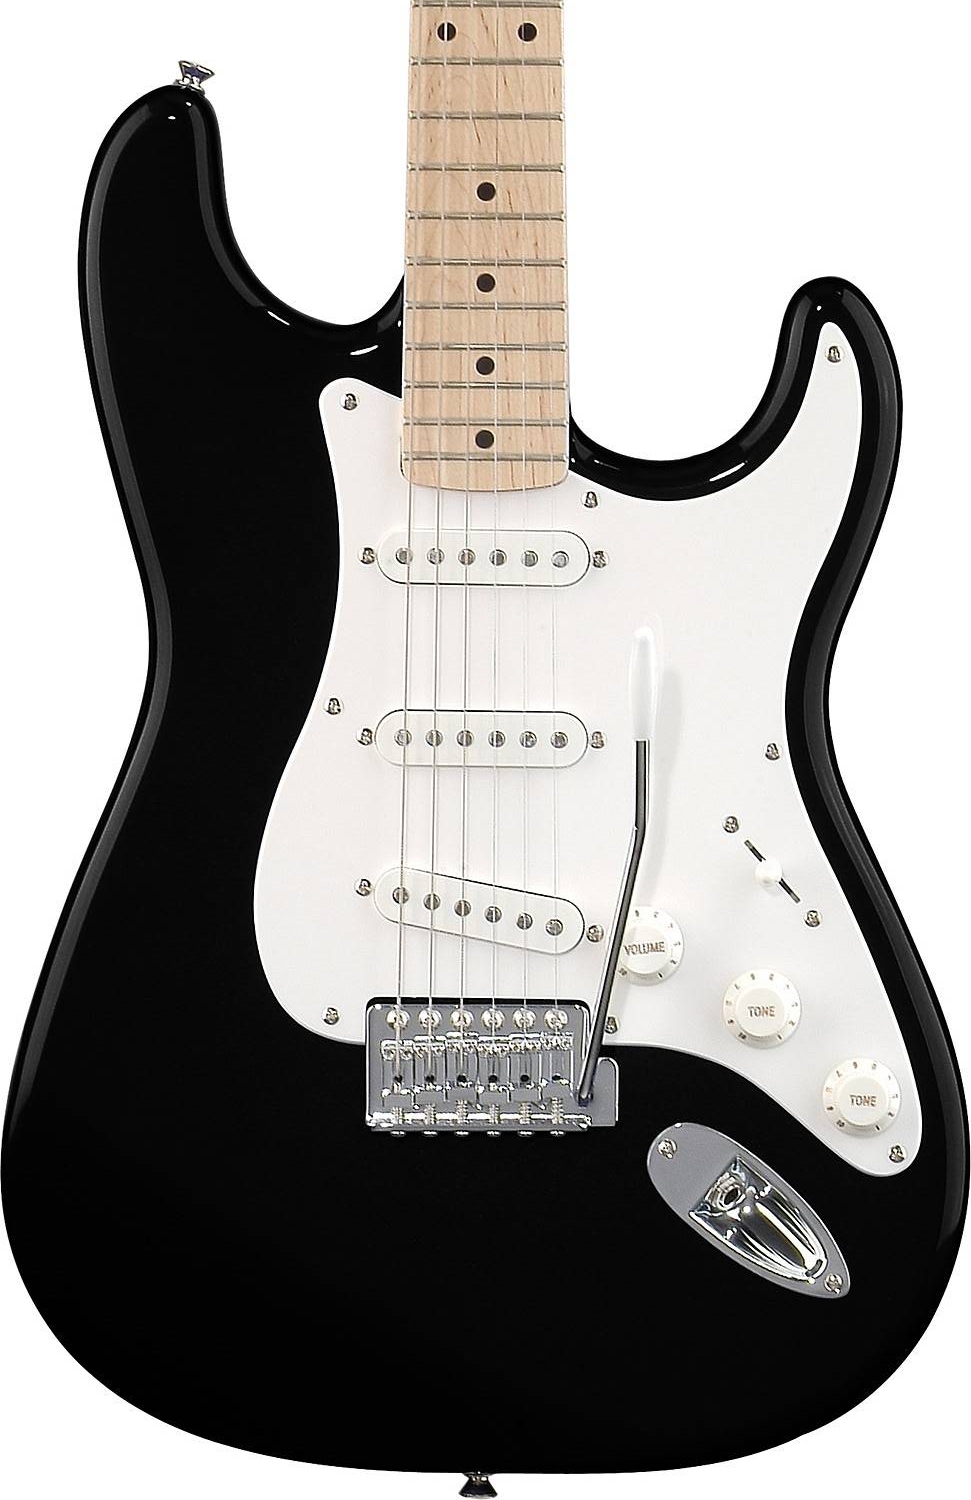 Средние электрогитары. Гитара Squier by Fender. Гитара Fender Stratocaster. Гитара Squier Strat by Fender. Fender Squier чëрная электрогитара.